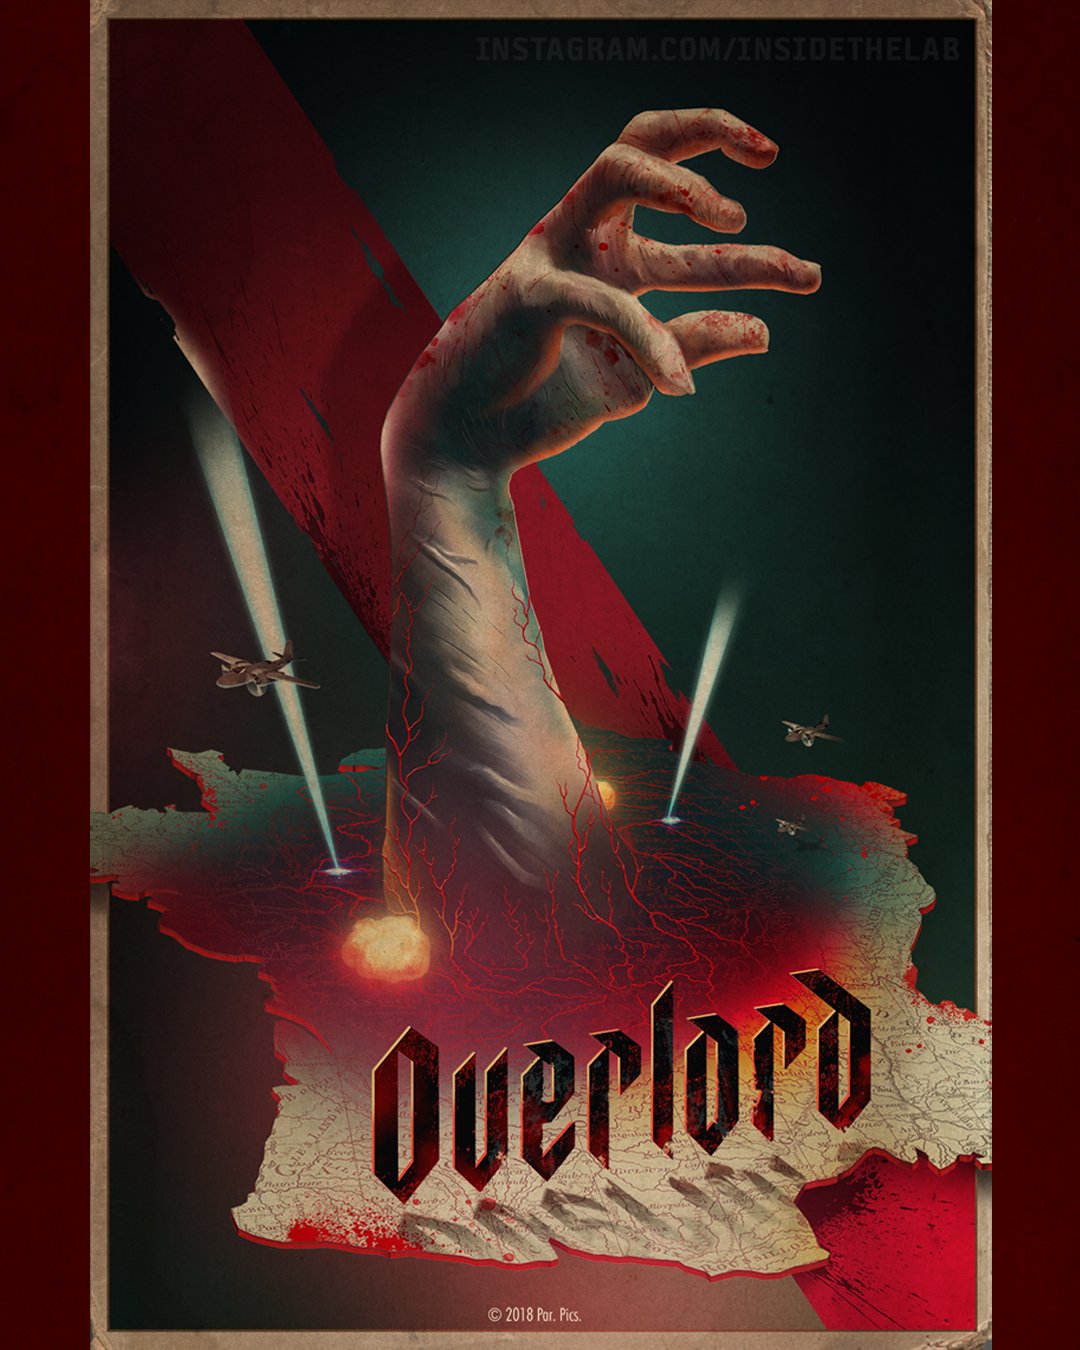 Novo filme animado de 'Overlord' ganha pôster espetacular - CinePOP